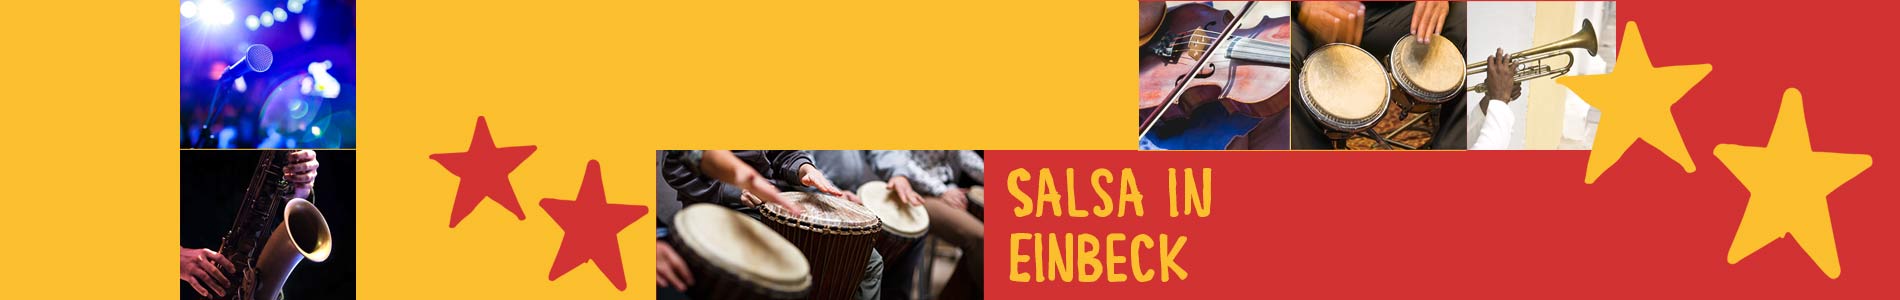 Salsa in Einbeck – Salsa lernen und tanzen, Tanzkurse, Partys, Veranstaltungen